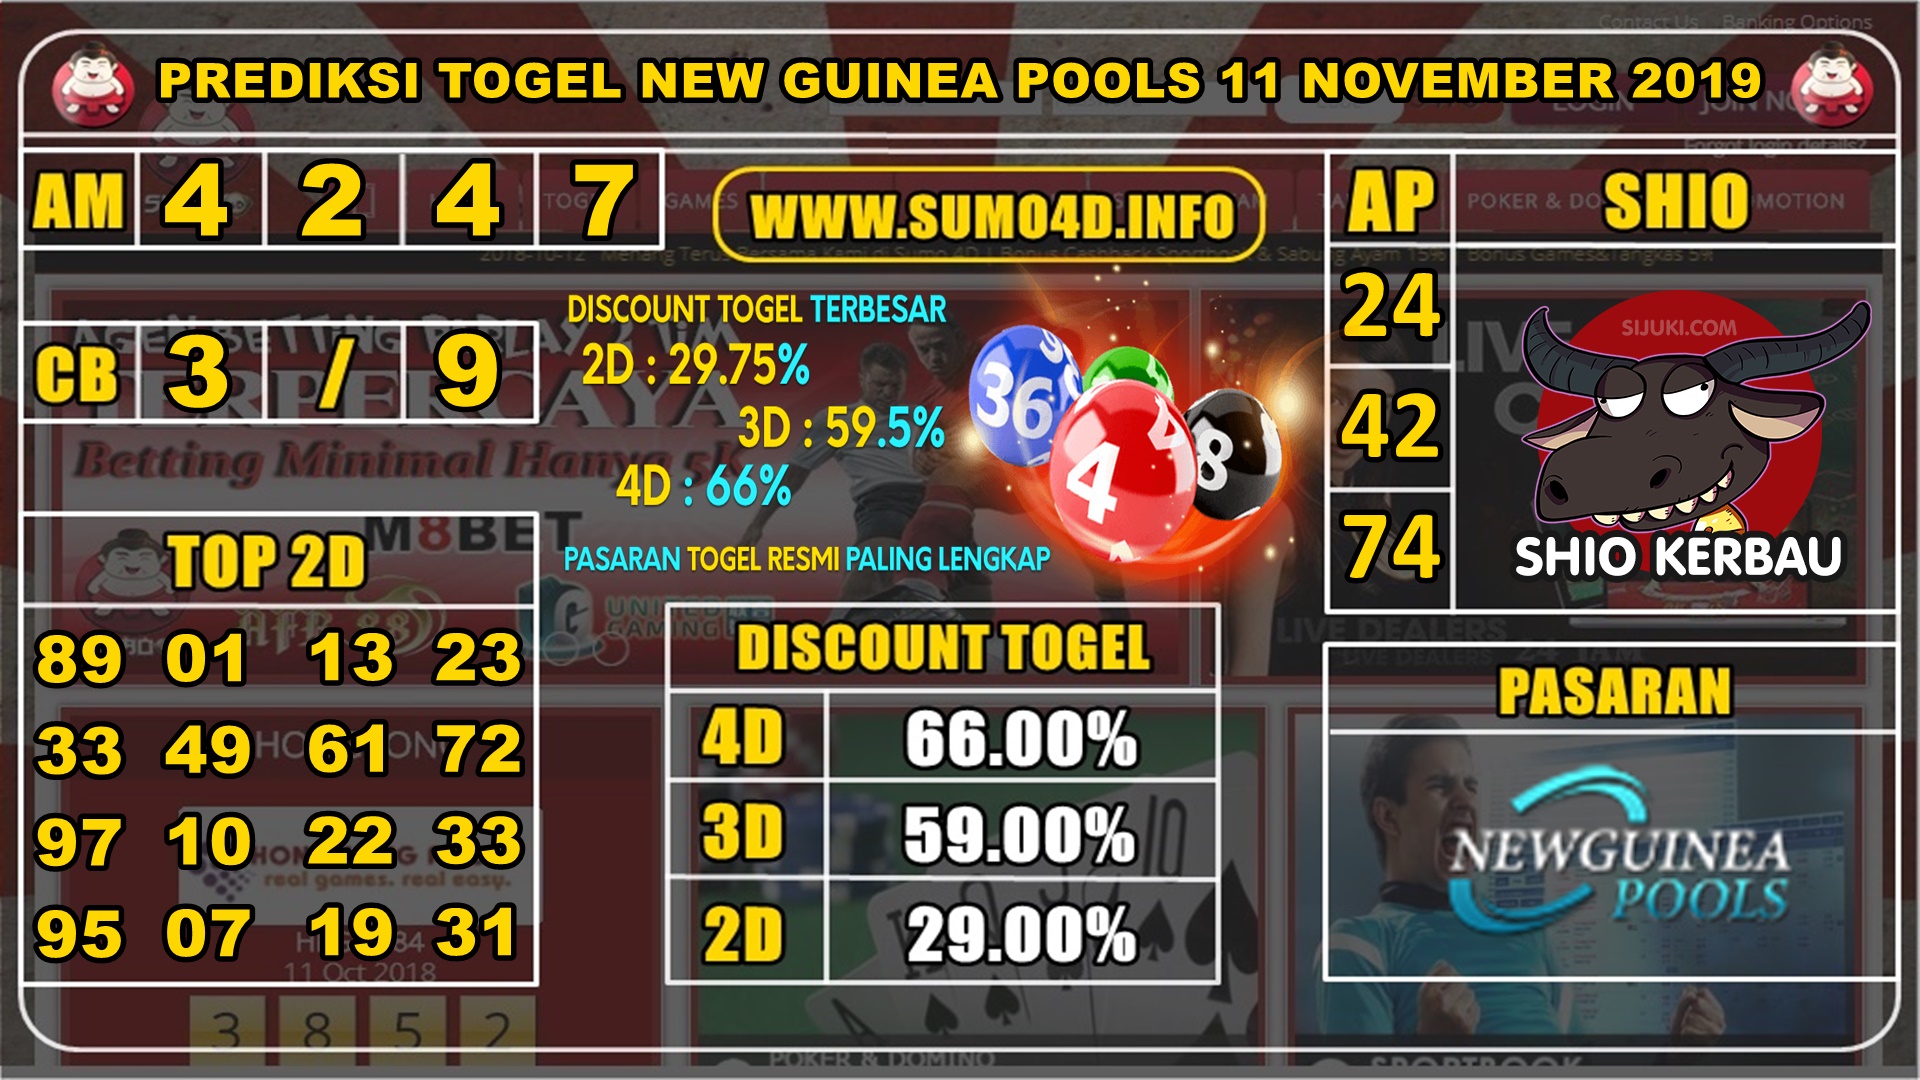 PREDIKSI TOGEL NEW GUINEA POOLS 11 NOVEMBER 2019